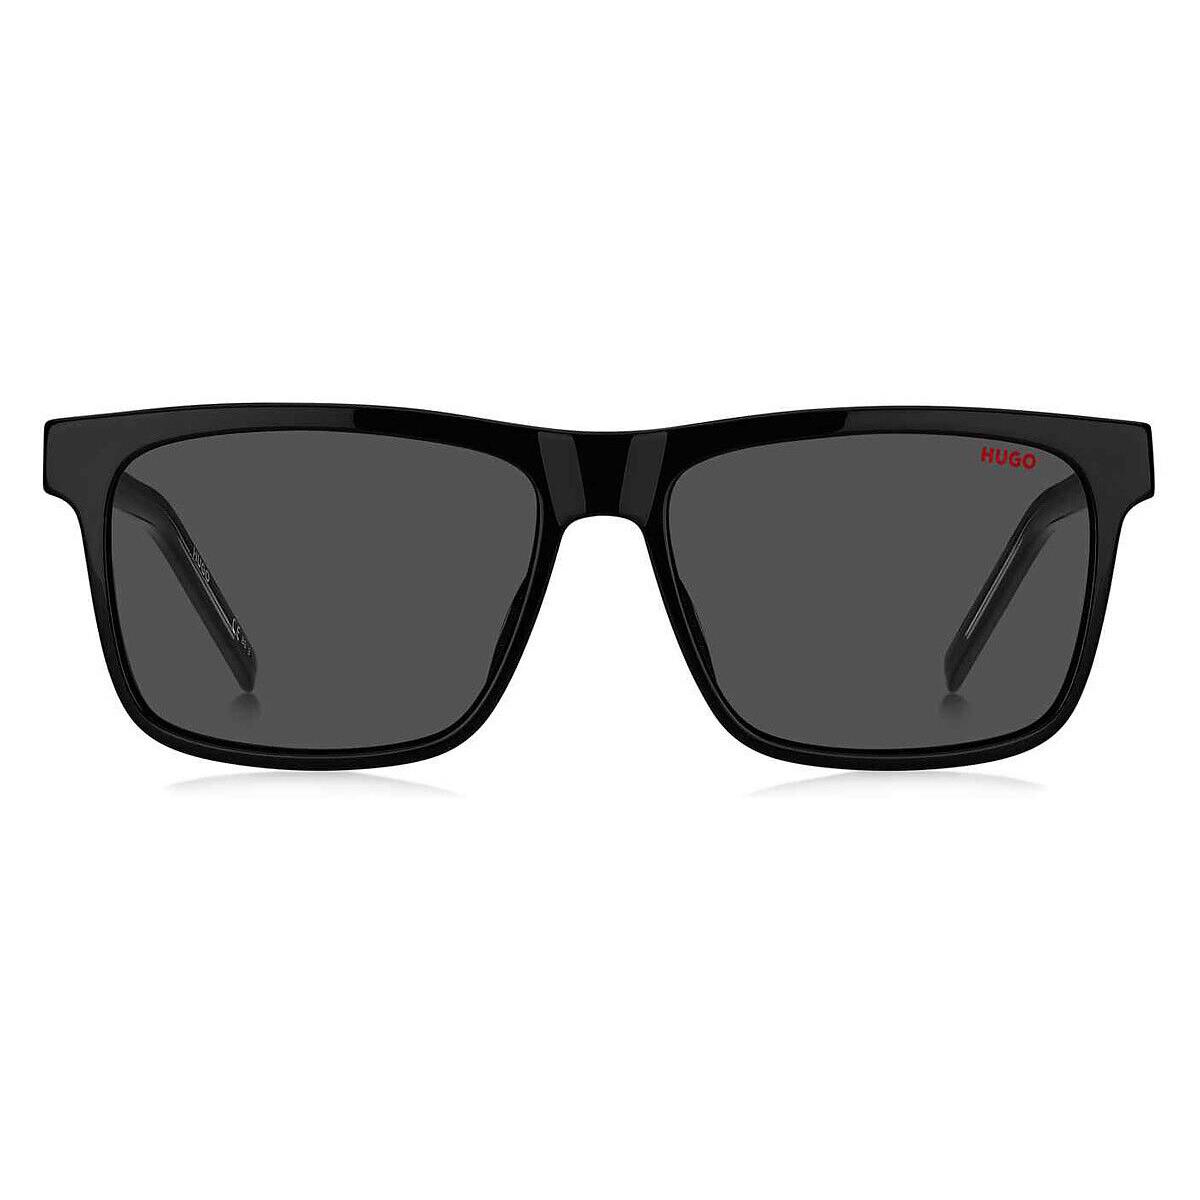 Hugo Boss HG 1242/S Sunglasses Men Black Gray Rectangle 56